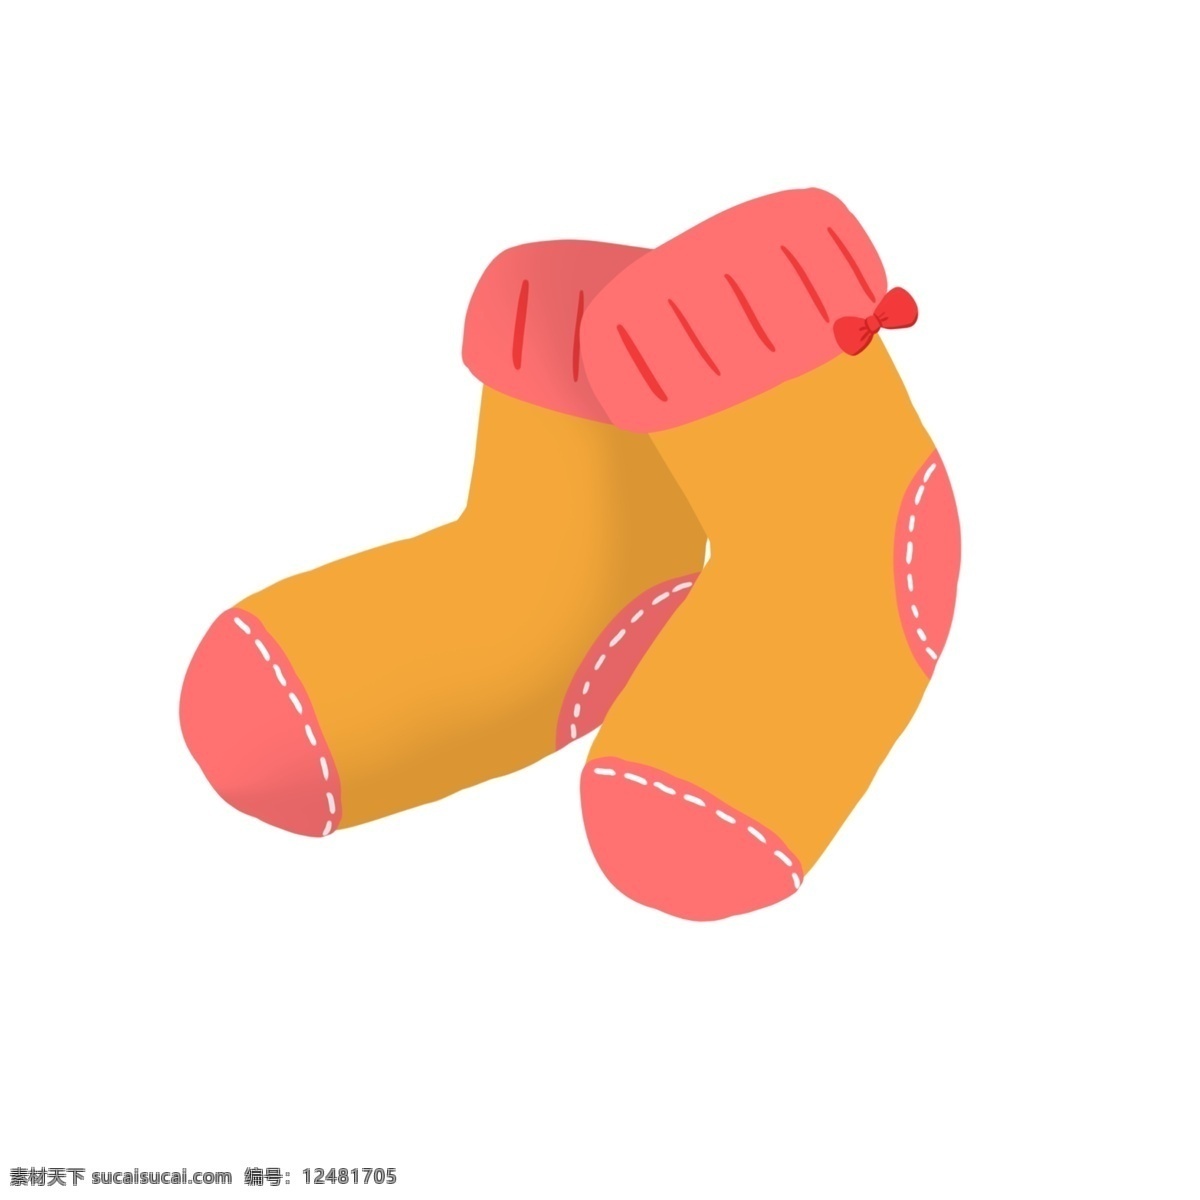 可爱 儿童 袜子 插画 保暖袜子 冬季袜子 小袜子 儿童用品 母婴用品 可爱的袜子 橘粉色的袜子 儿童袜子插画